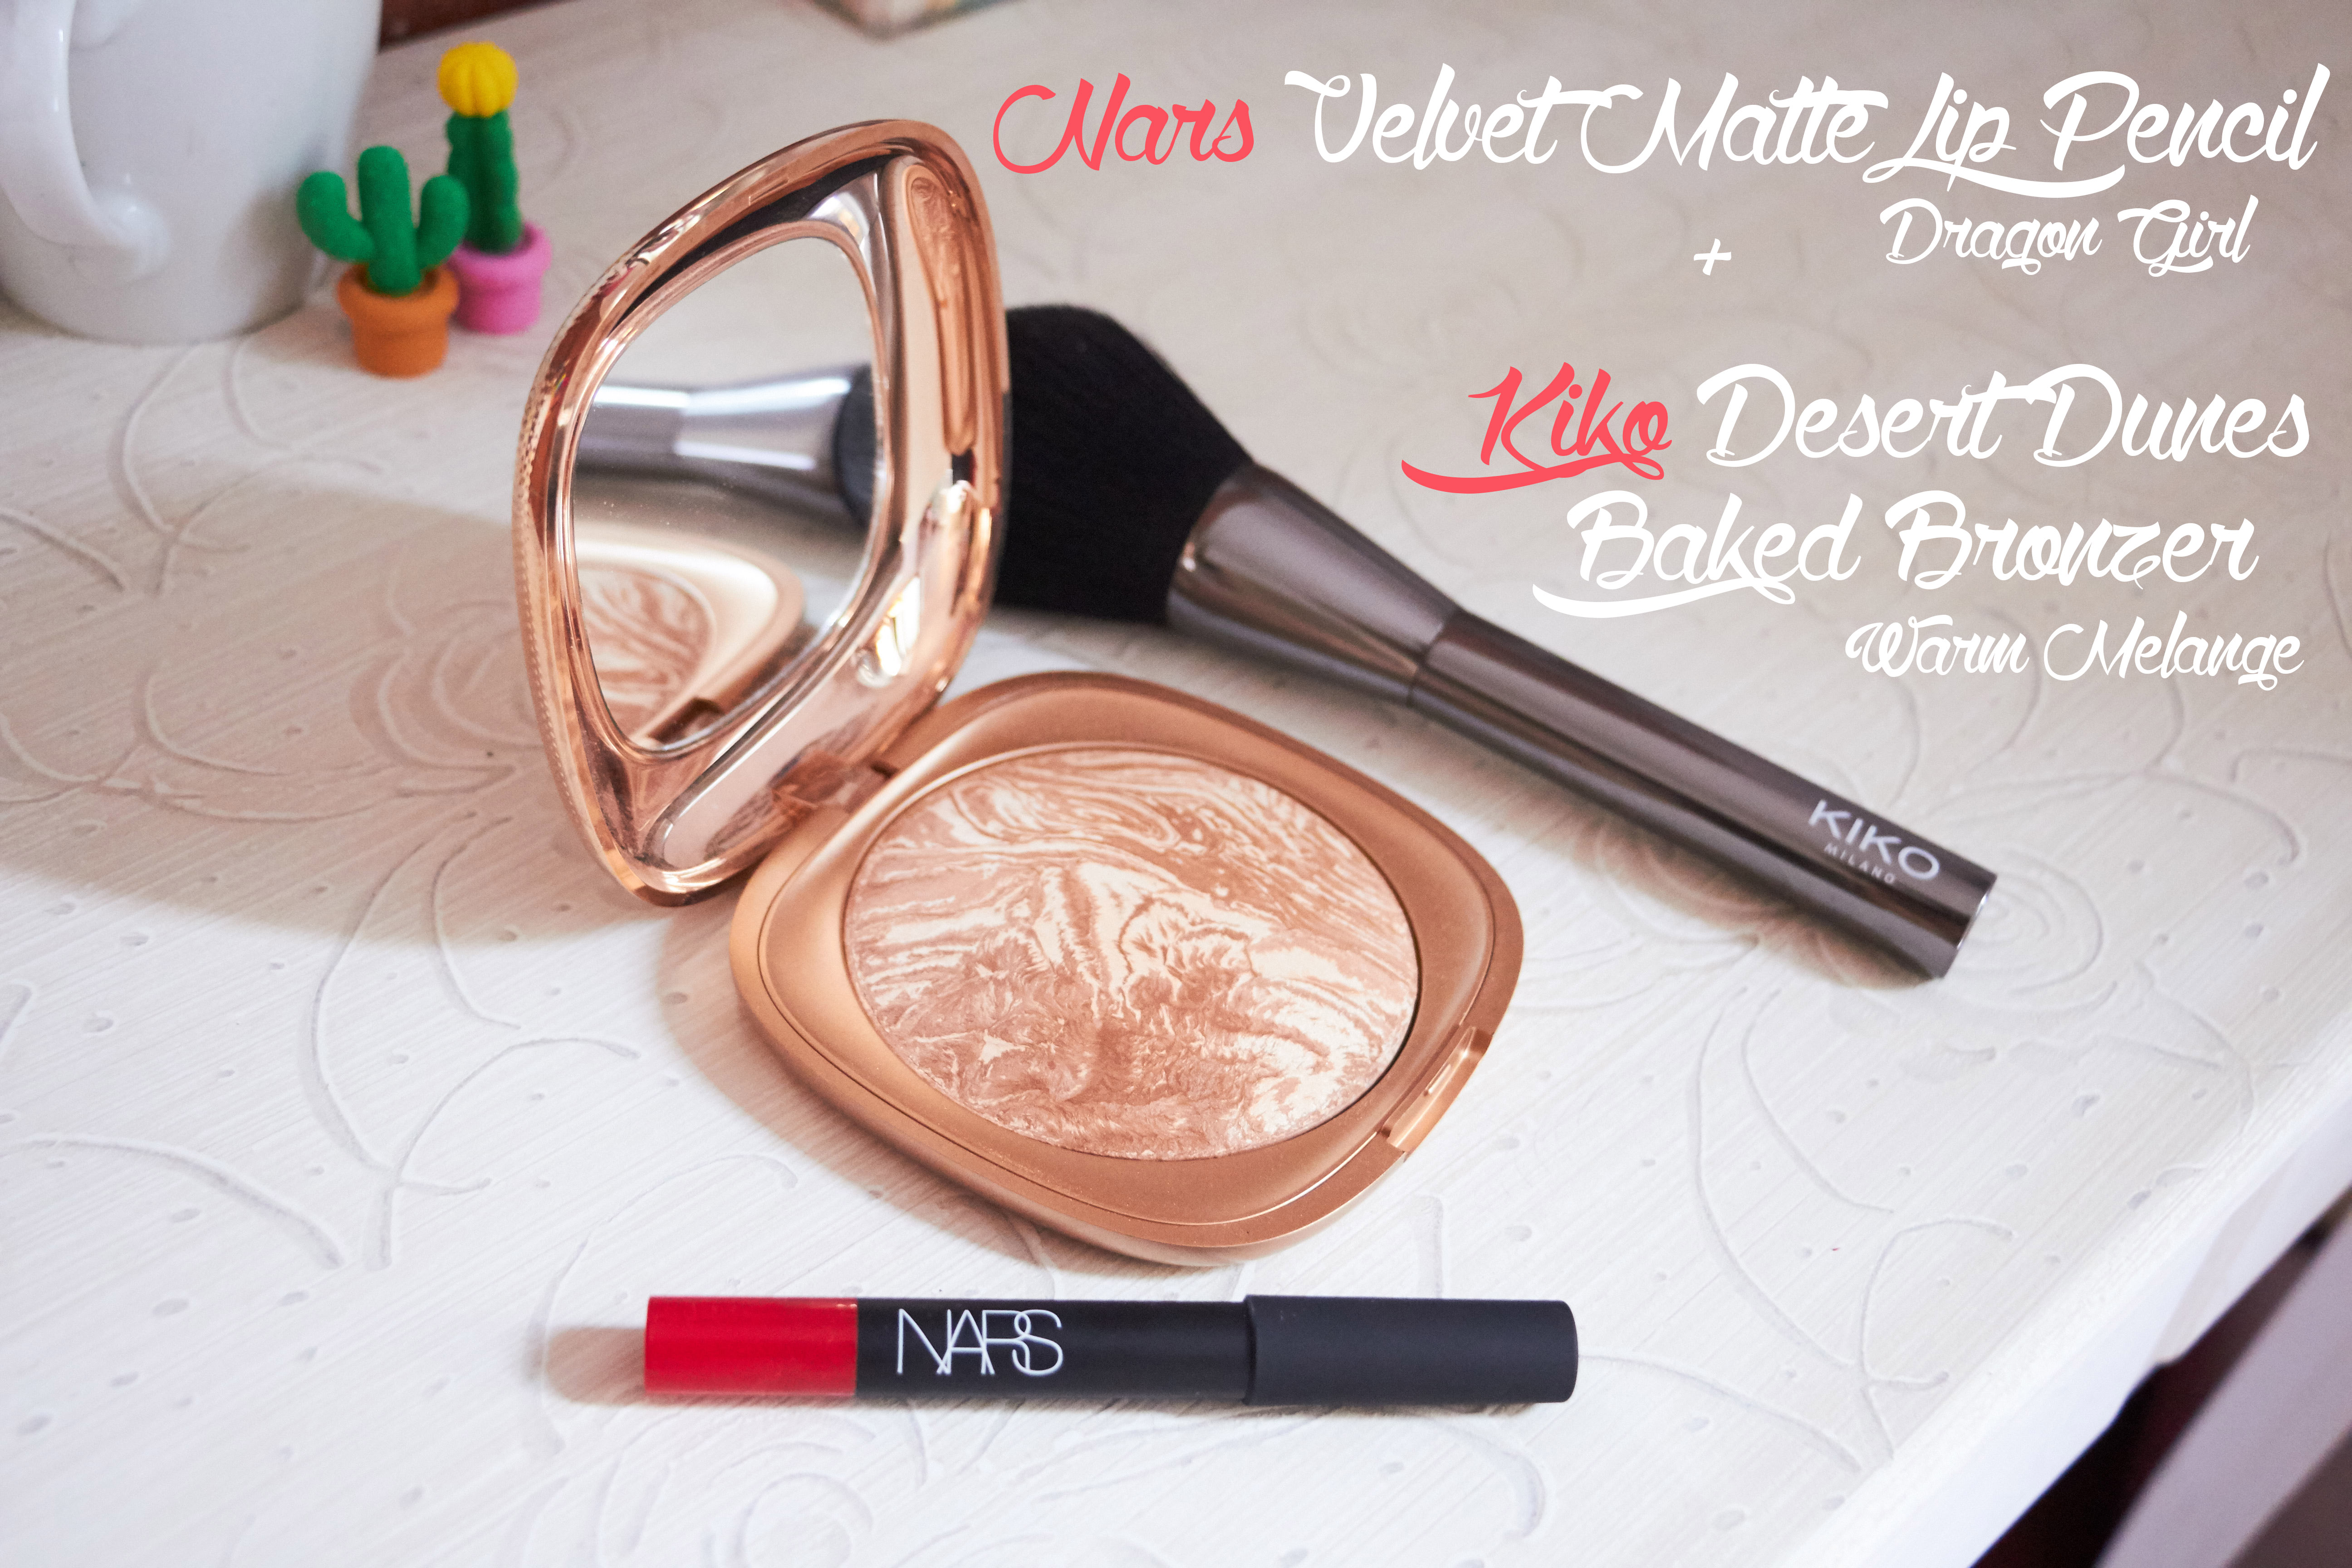 Nars_Velvet_Matte_Lip_Pencil 7 KIKO Desert Bronzer